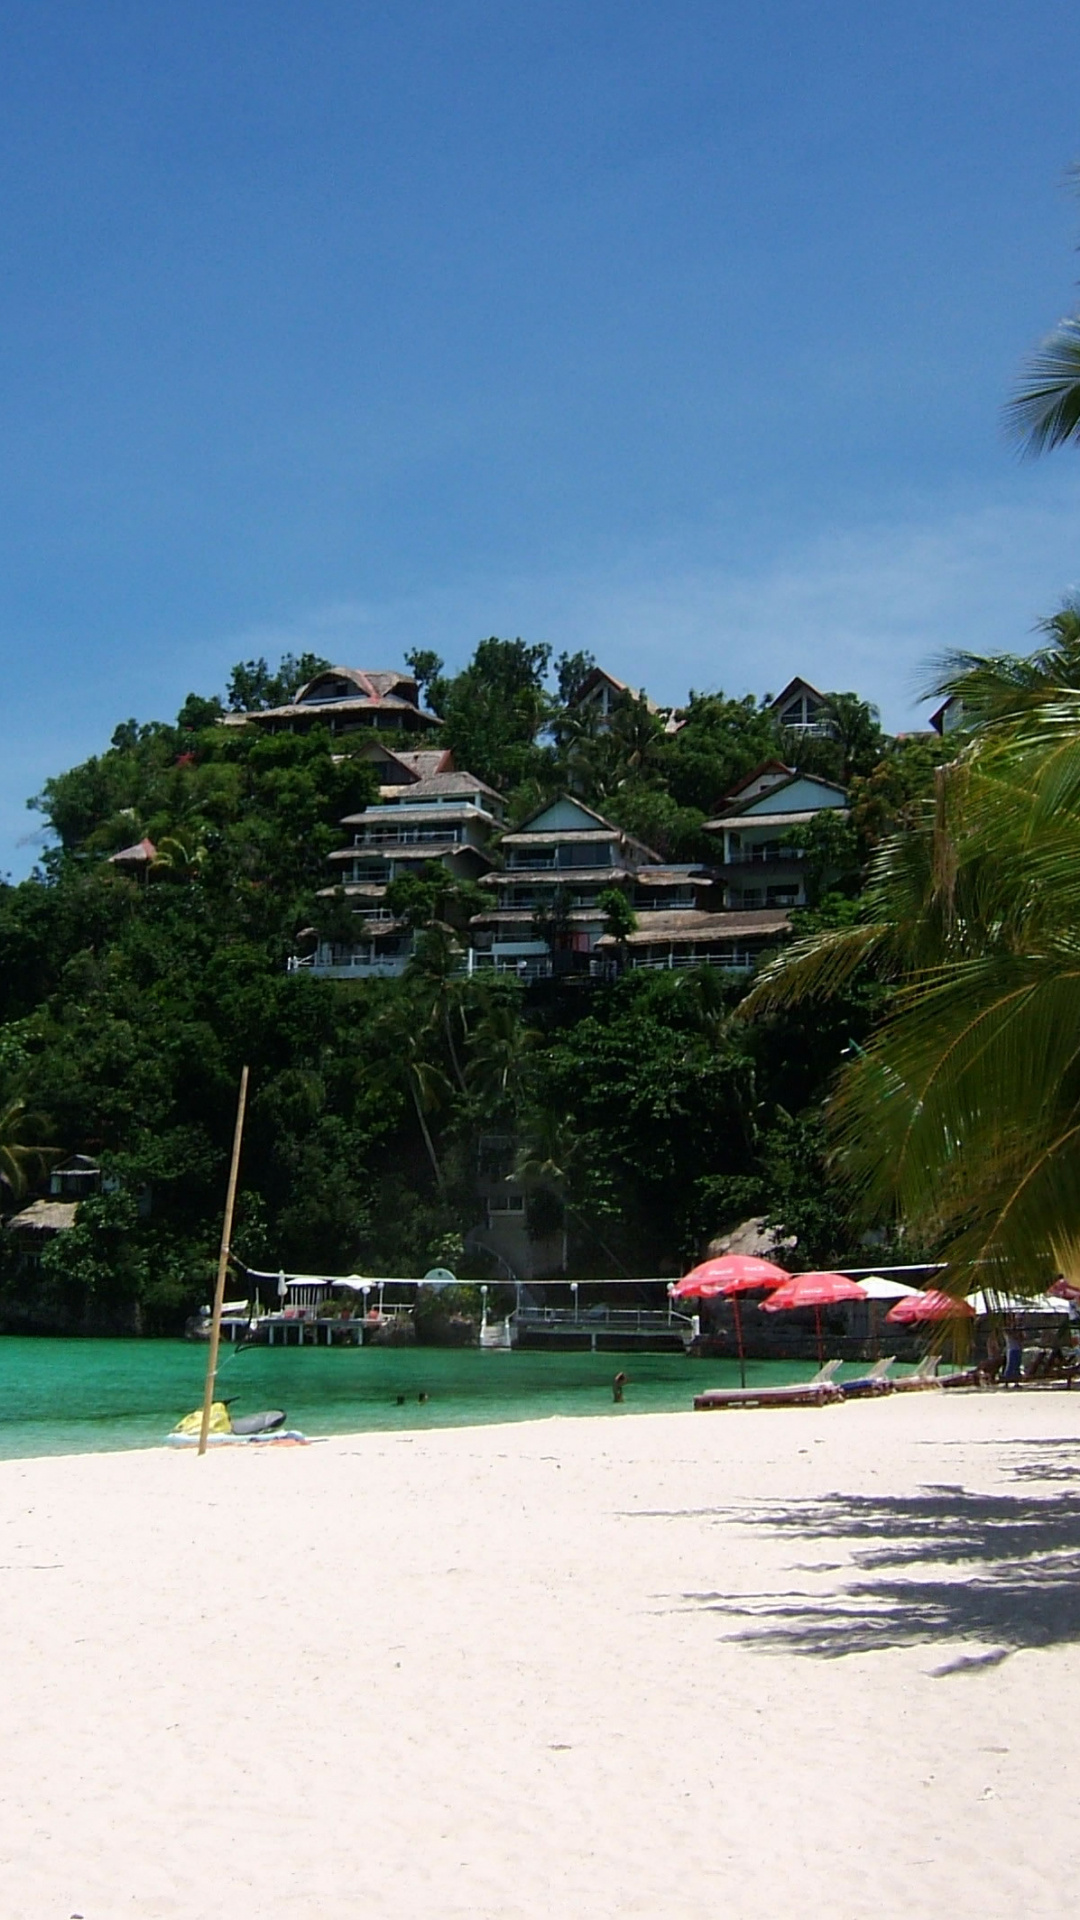 Philippine sugar islands, Boracay Punta Bunga, Beach photos, Wallpaper treasure, 1080x1920 Full HD Phone